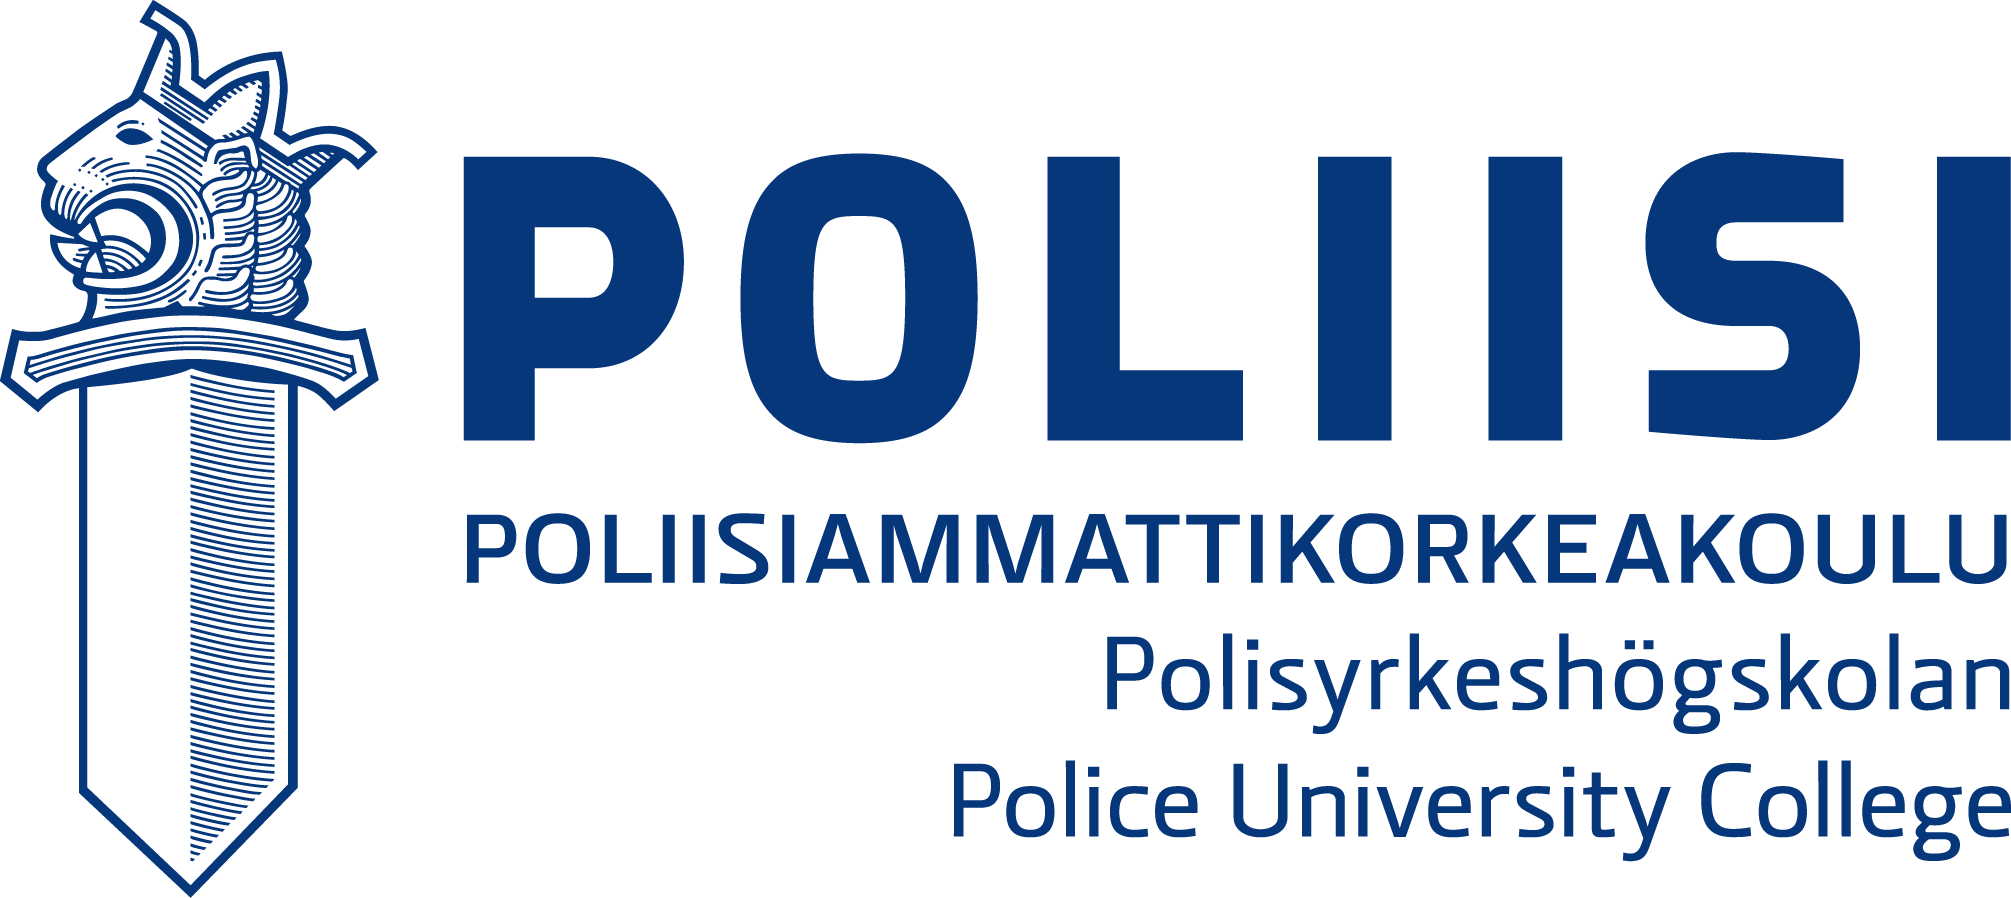 Poliisiammattikorkeakoulu-logo.